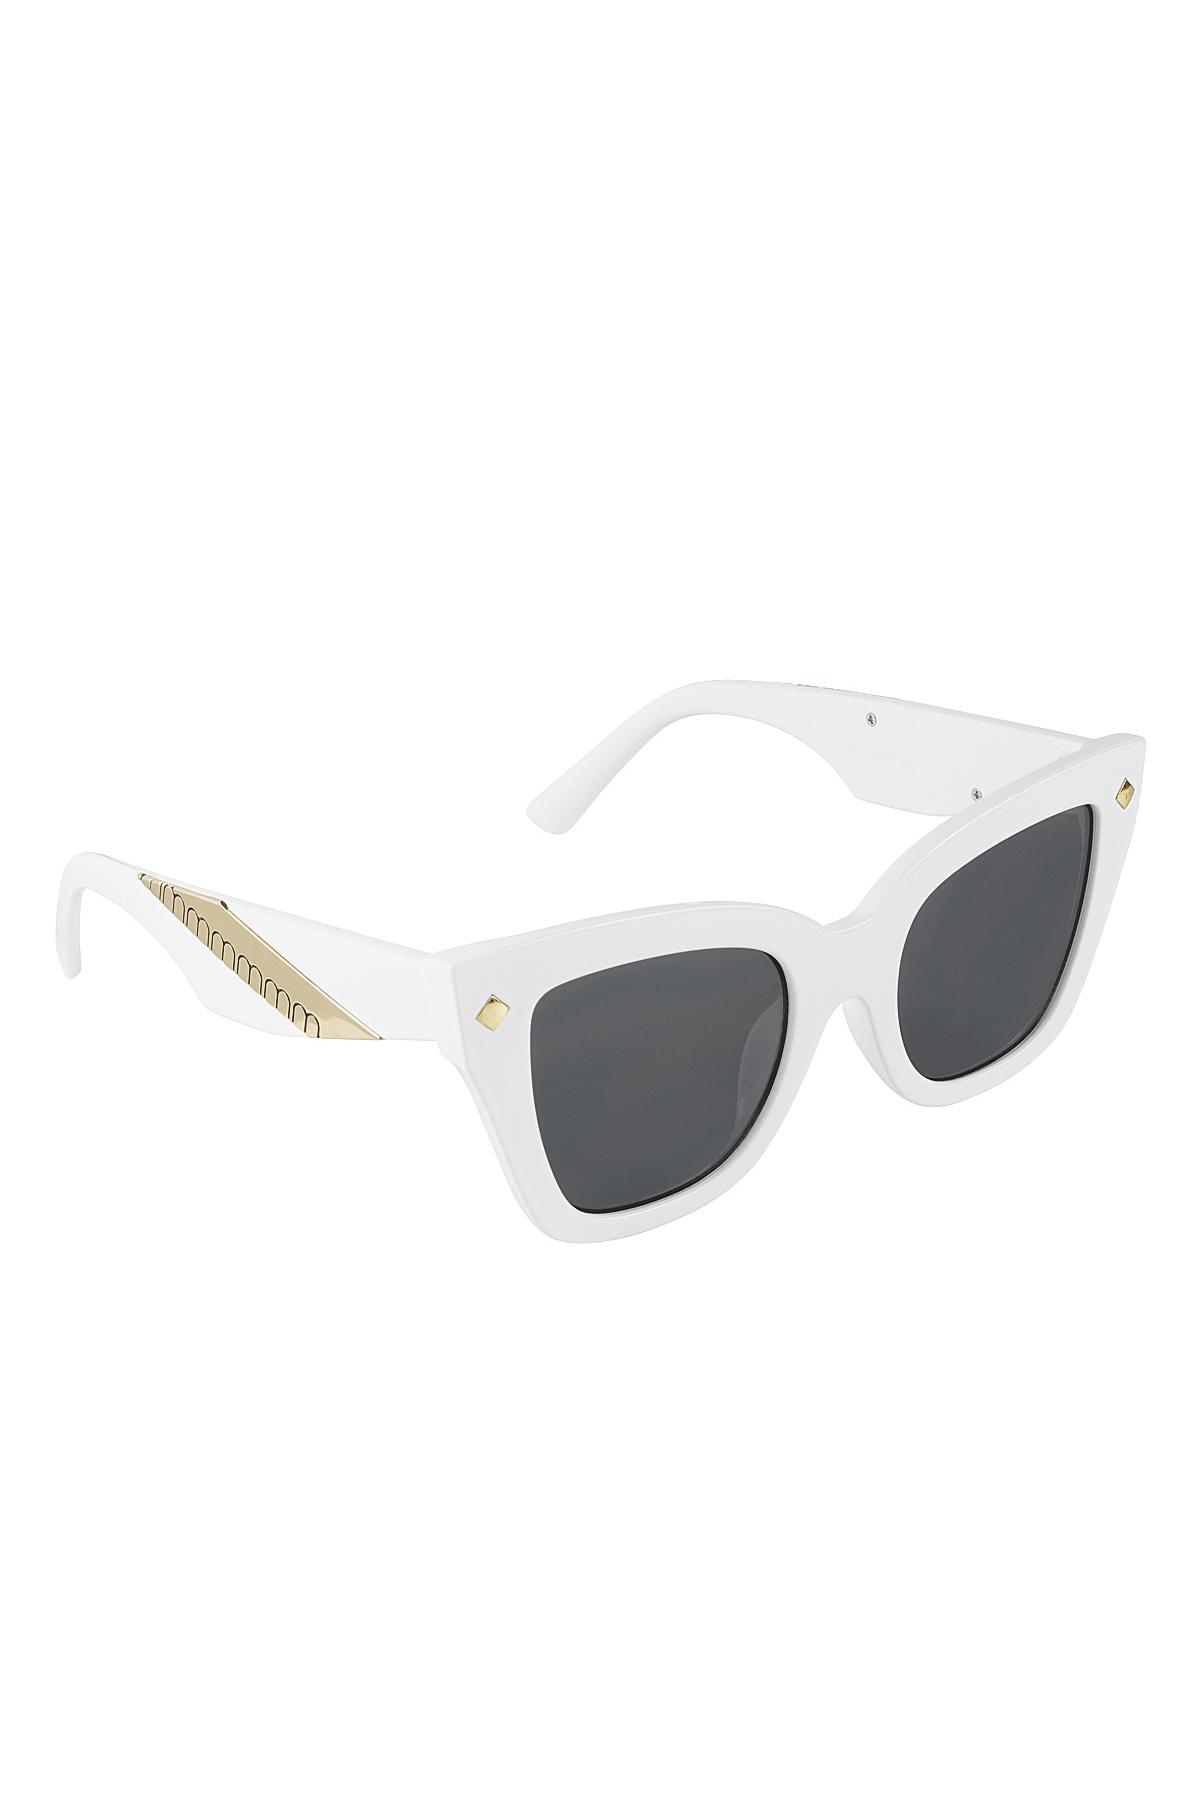 Sunglasses basic/gold White PC One size